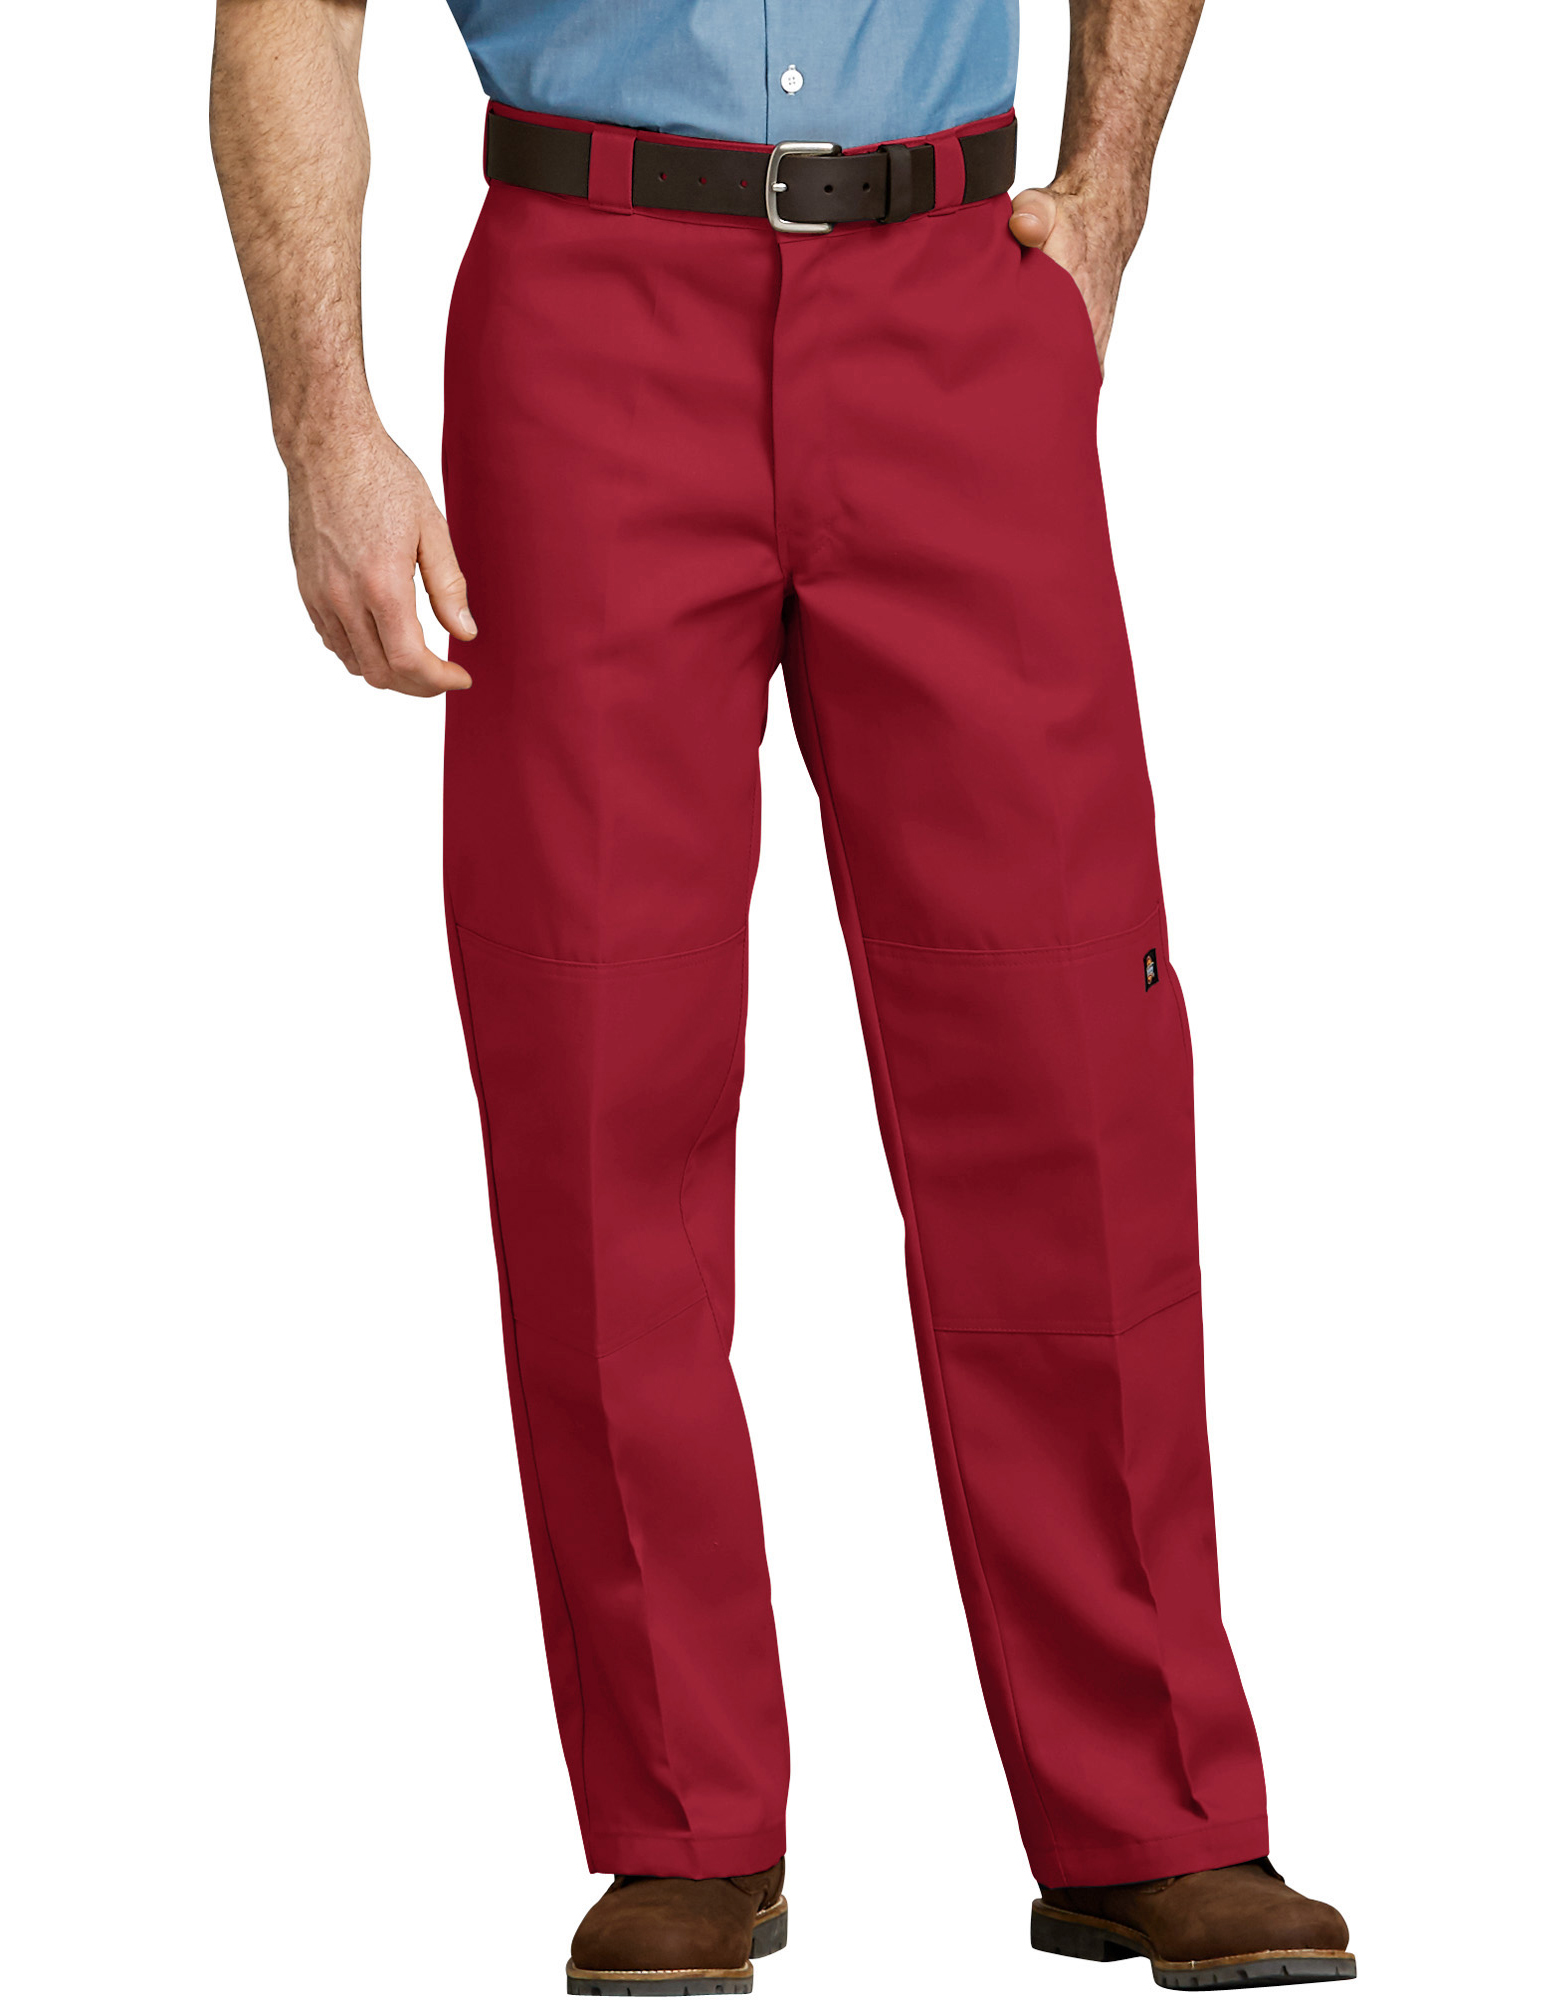 red dickies pants womens